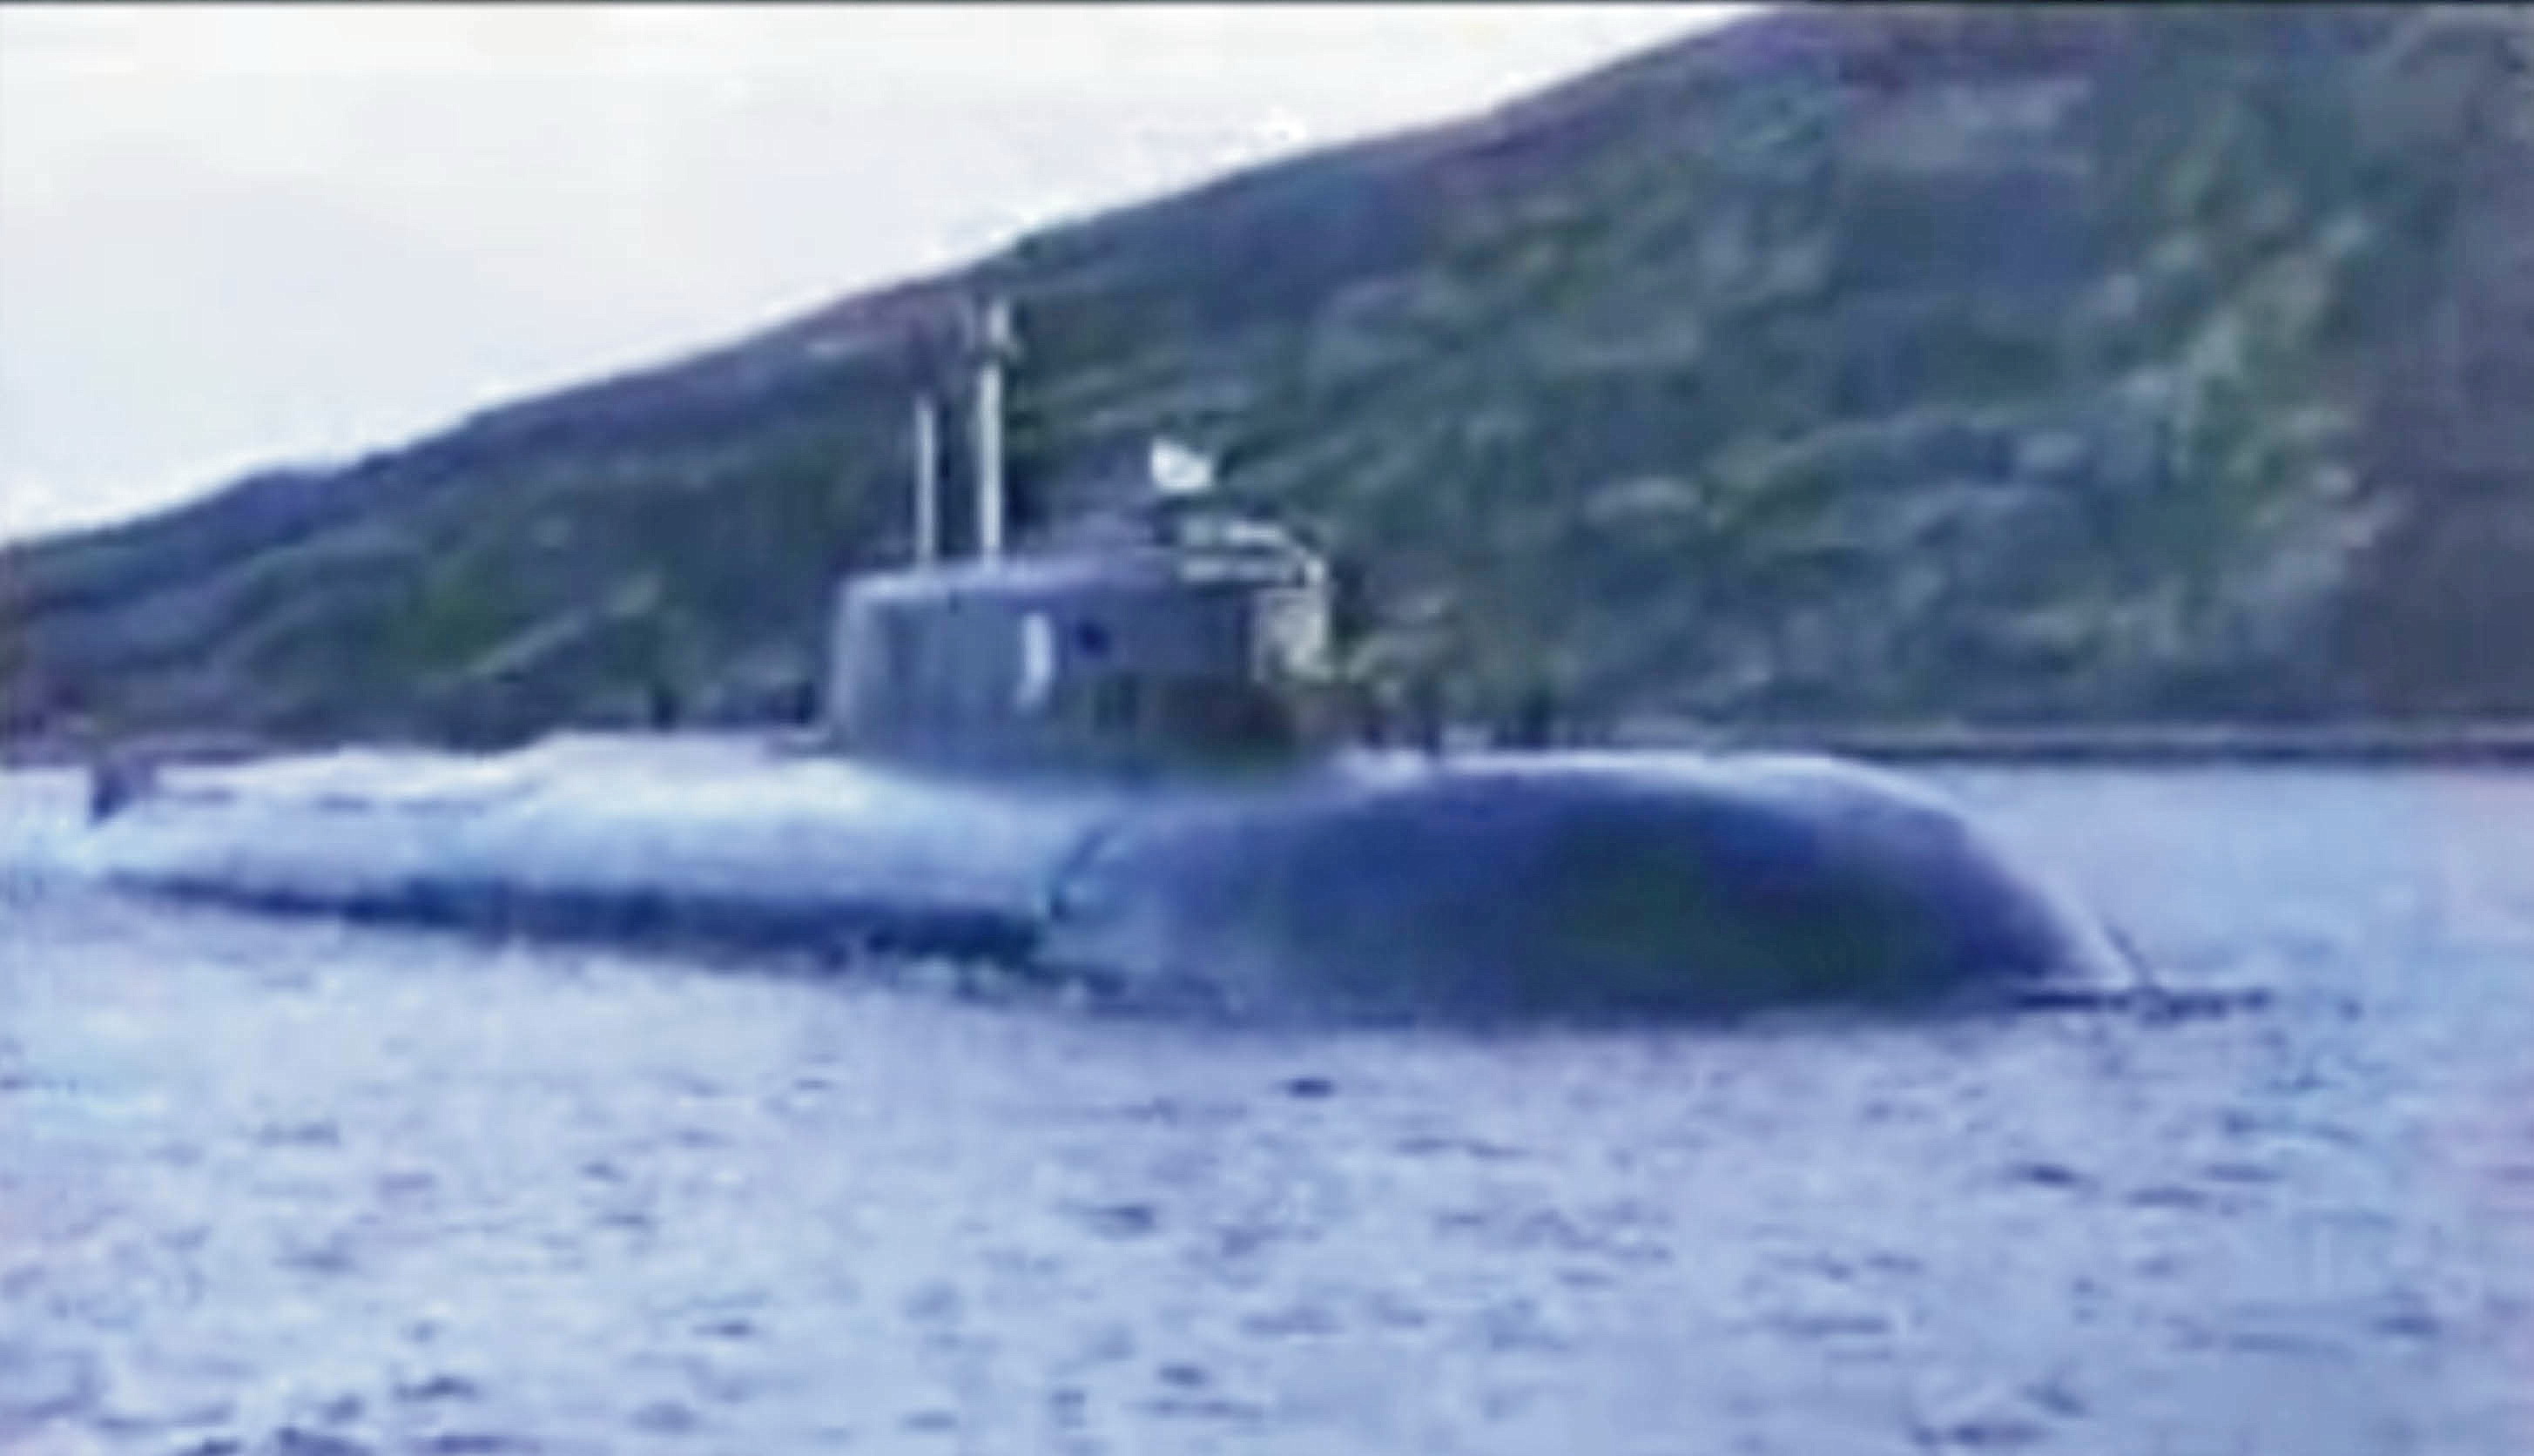 Курск под водой ванга. Подводная лодка к-141 «Курск». Курск подводная лодка катастрофа. Курск подводная лодка в мутной воде.